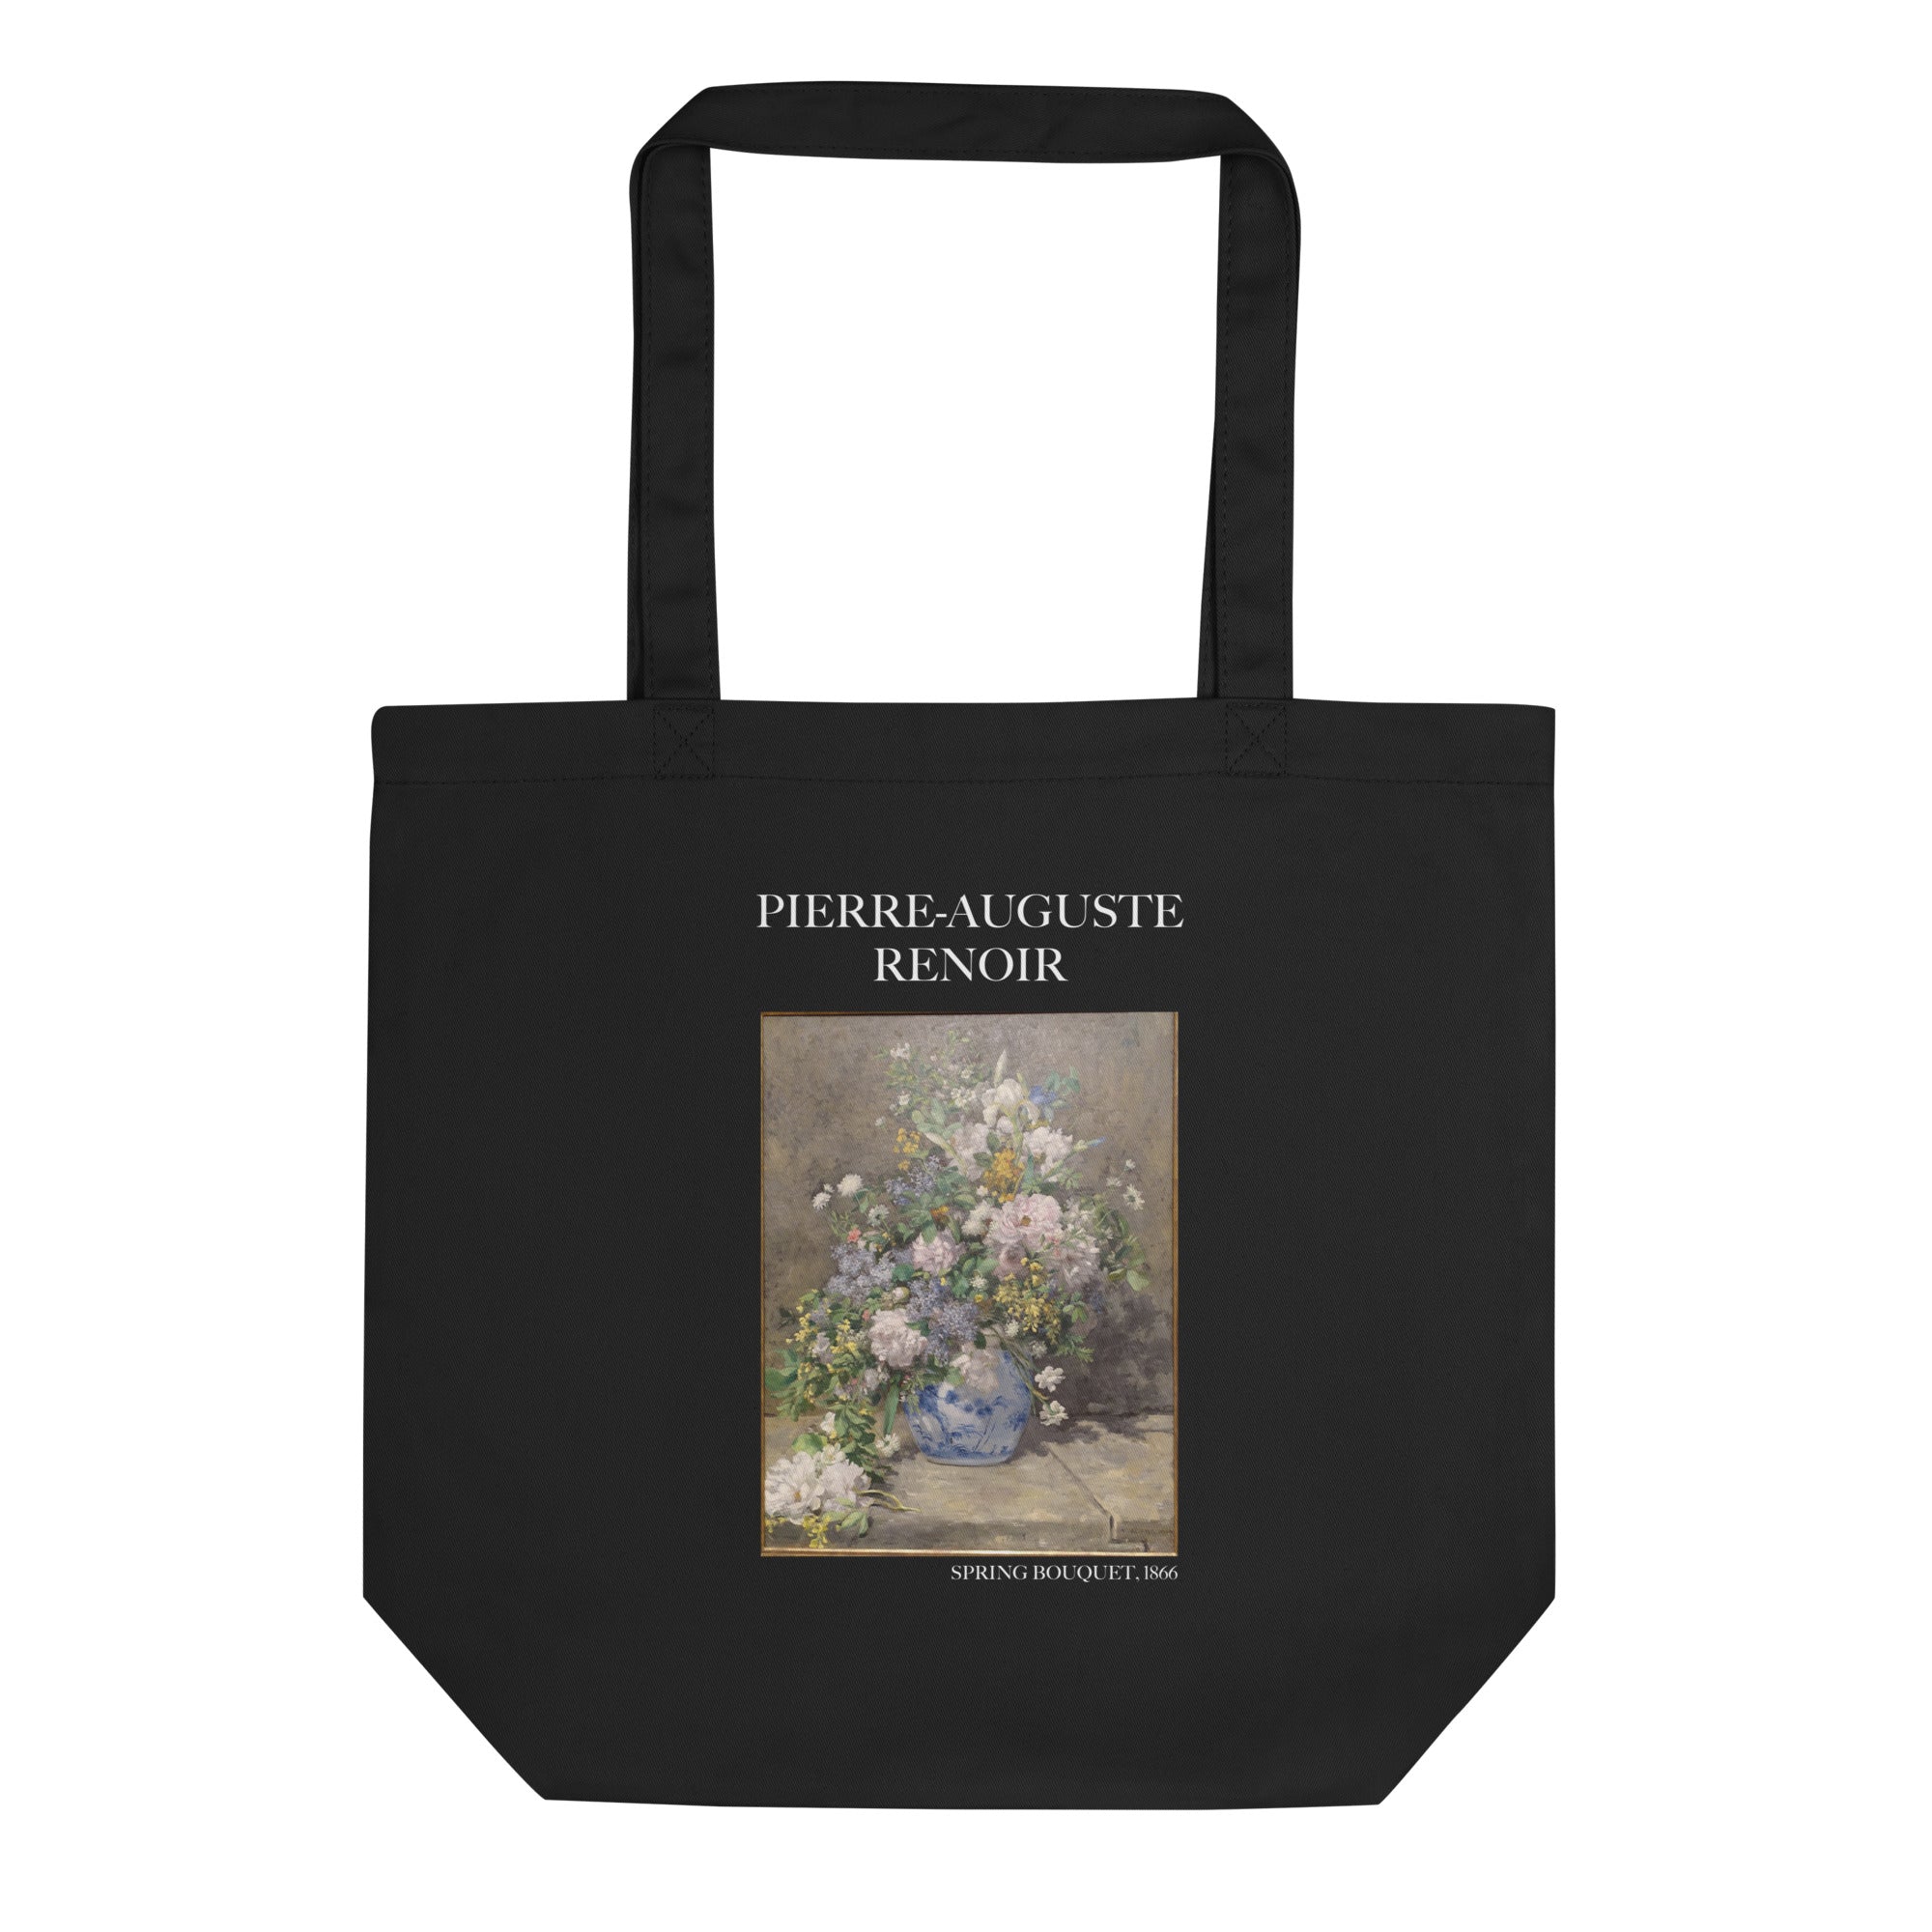 Pierre-Auguste Renoir 'Frühlingsstrauß' berühmtes Gemälde Tragetasche | Umweltfreundliche Kunst Tragetasche